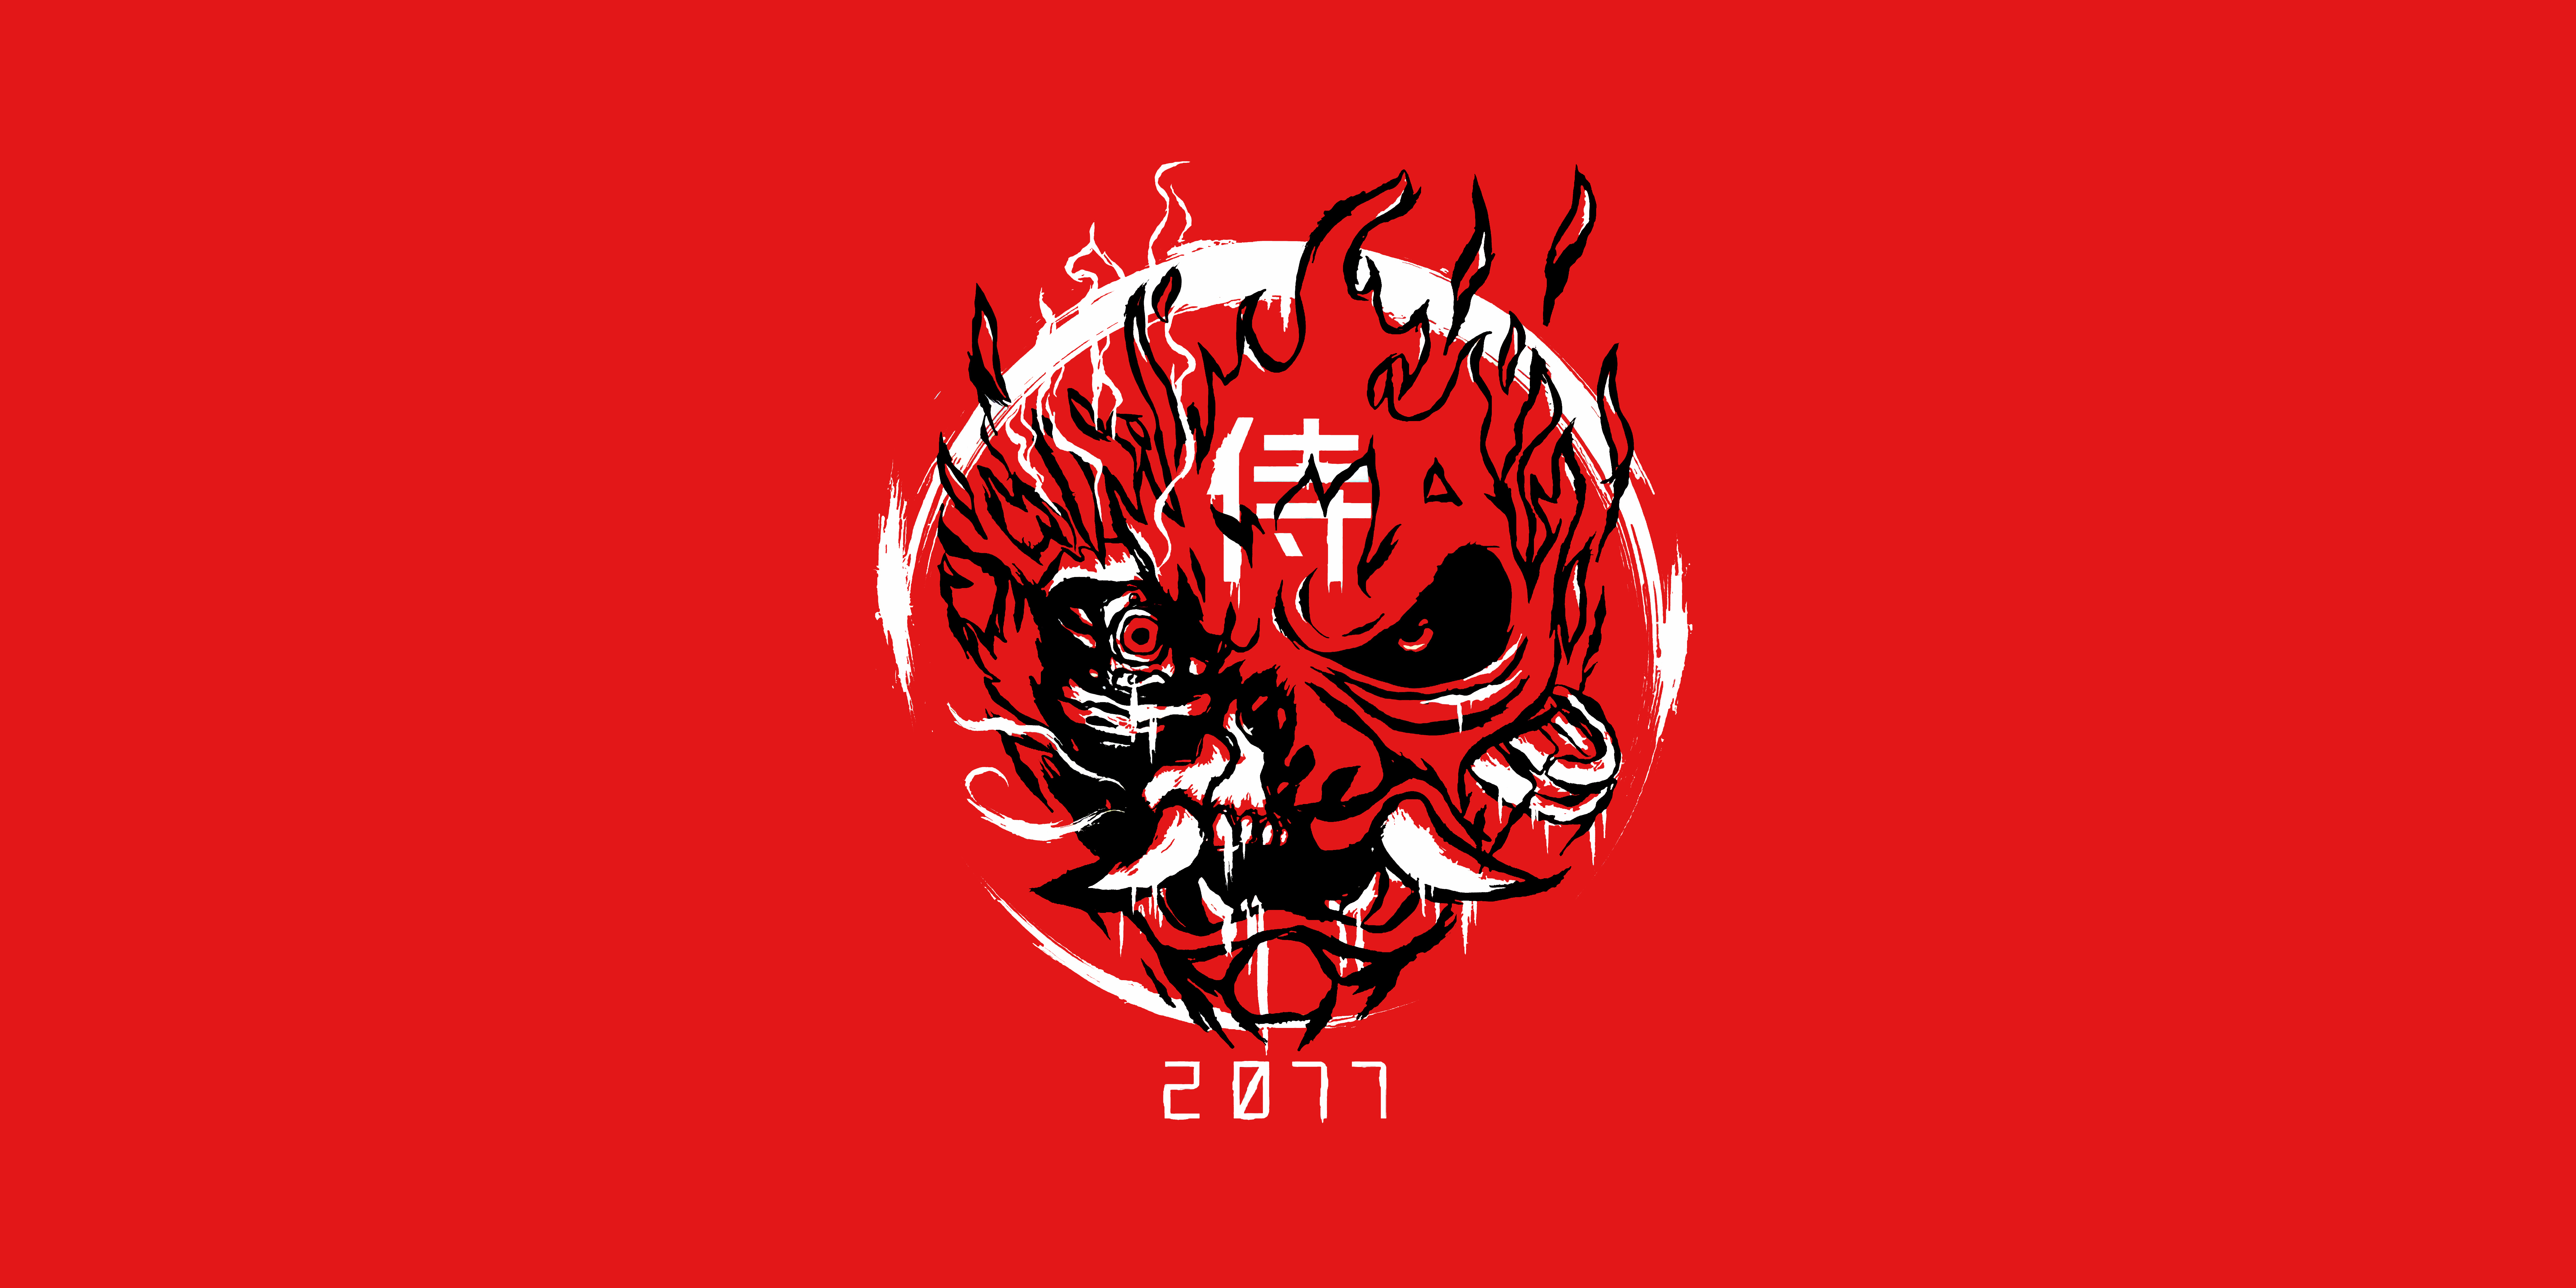 Wallpaper, Cyberpunk cyberpunk, CD Projekt RED, samurai, demon, red background 8192x4096